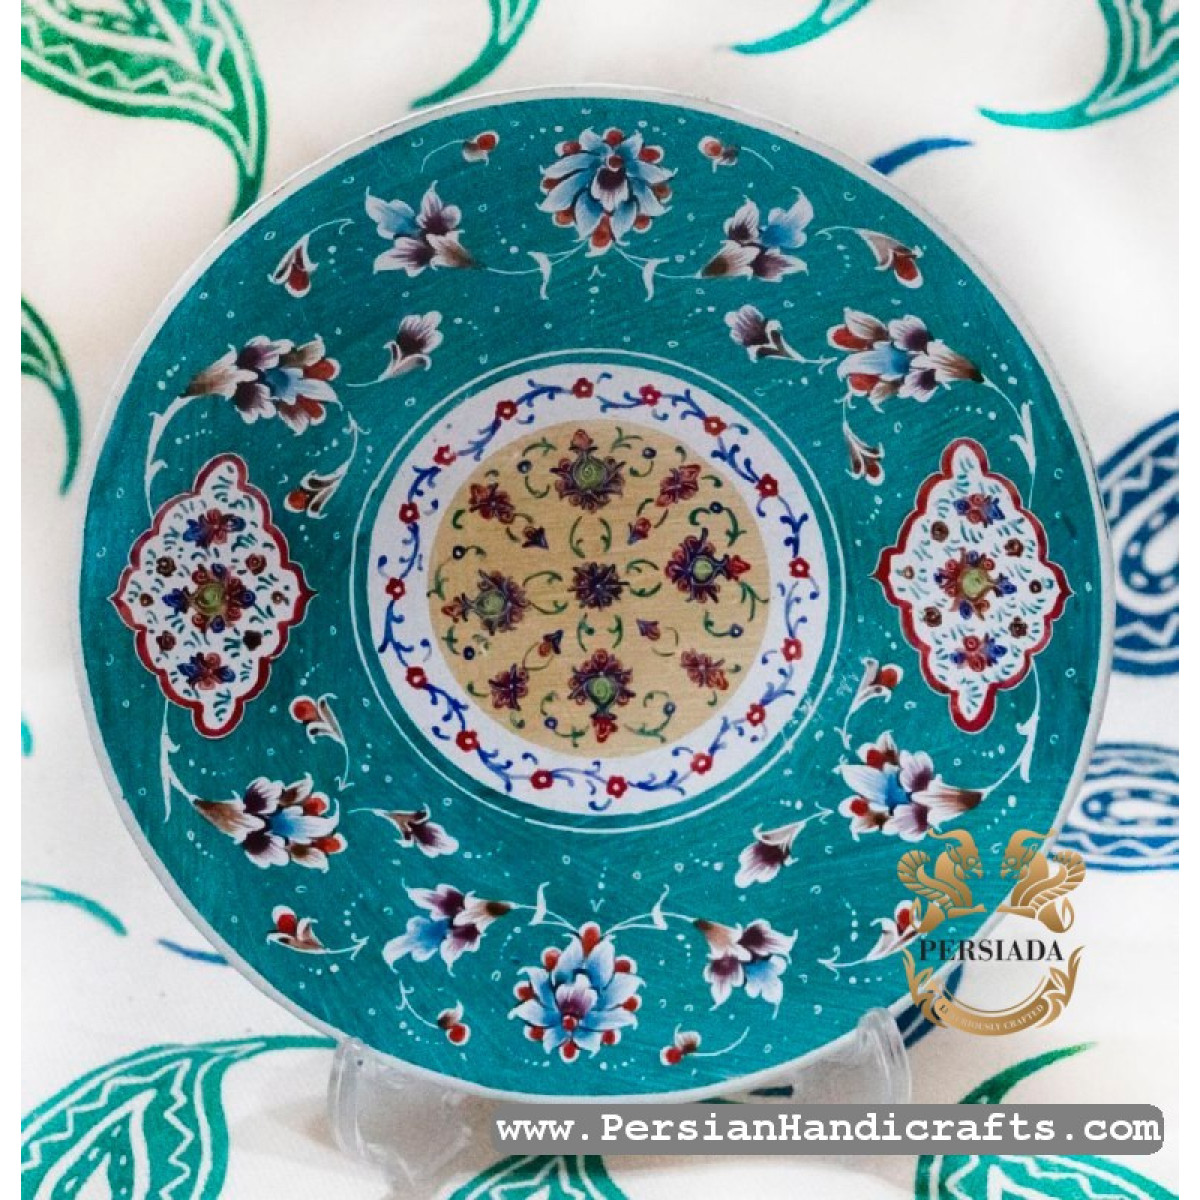 Wall Plate | Hand Painted Minakari | PHE2106-Persian Handicrafts